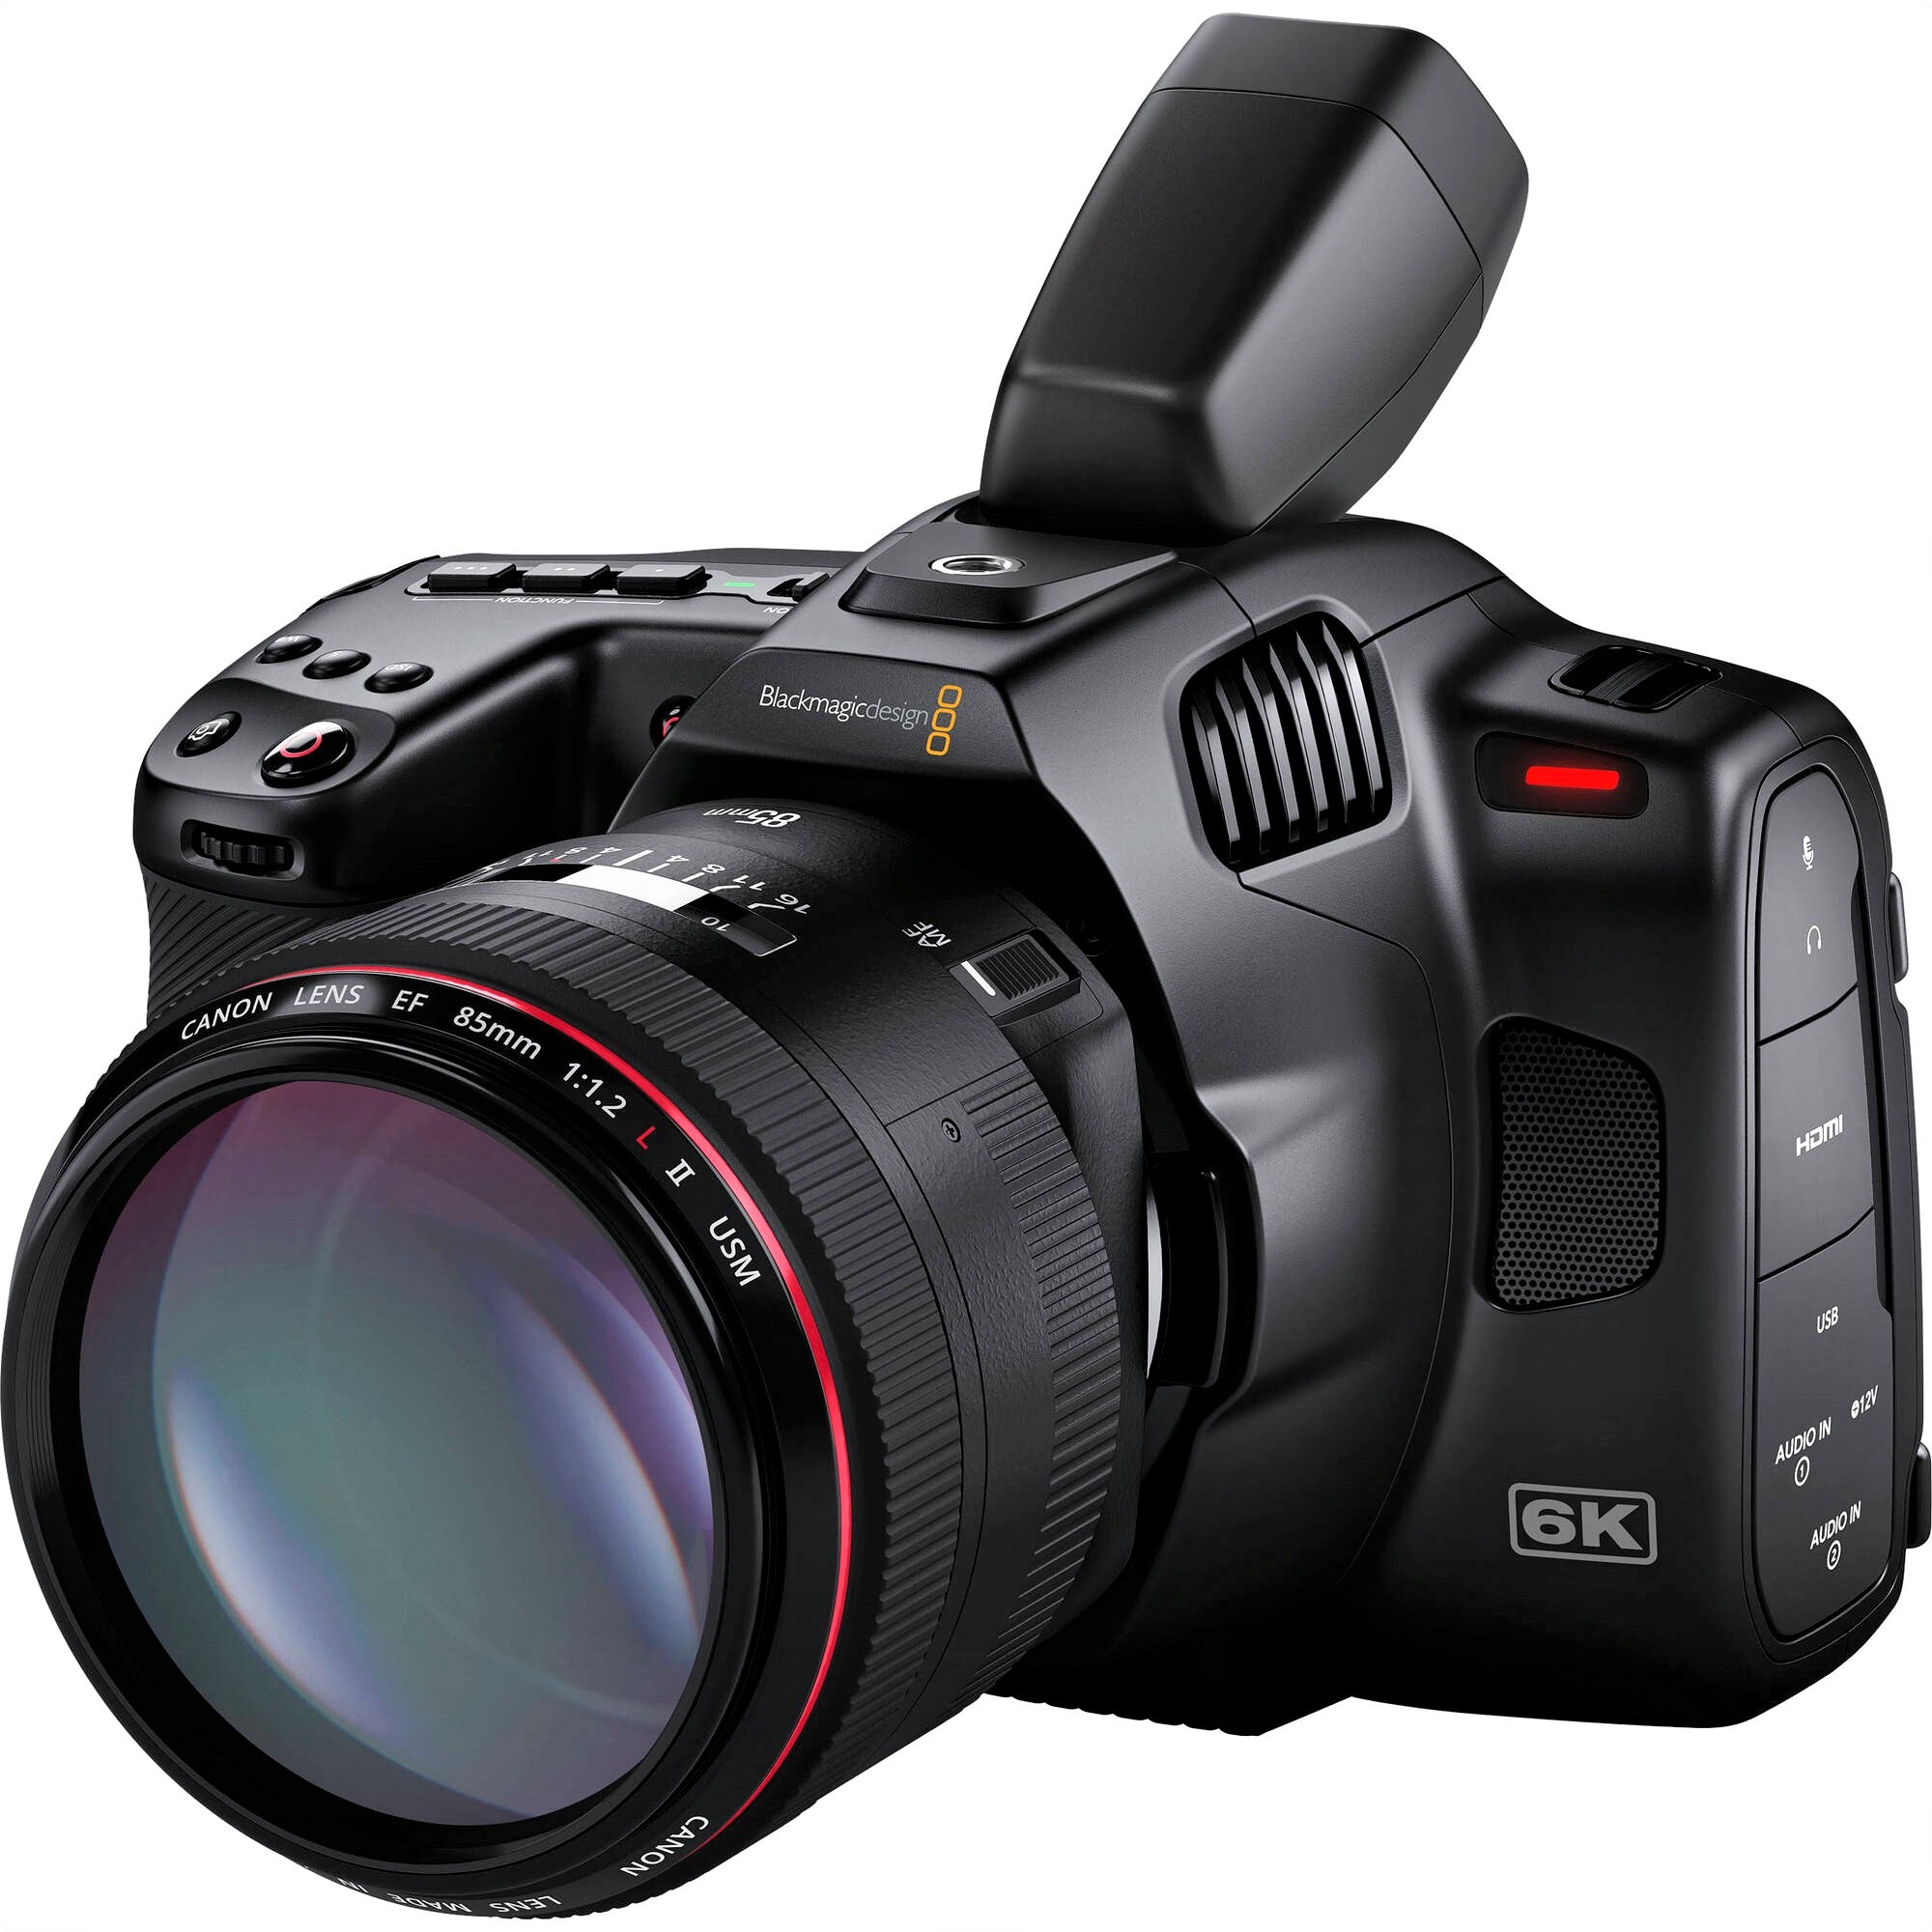 Blackmagic Design Pocket Cinema Camera 6K G2 - Electronic Viewfinder & Lens Not Included